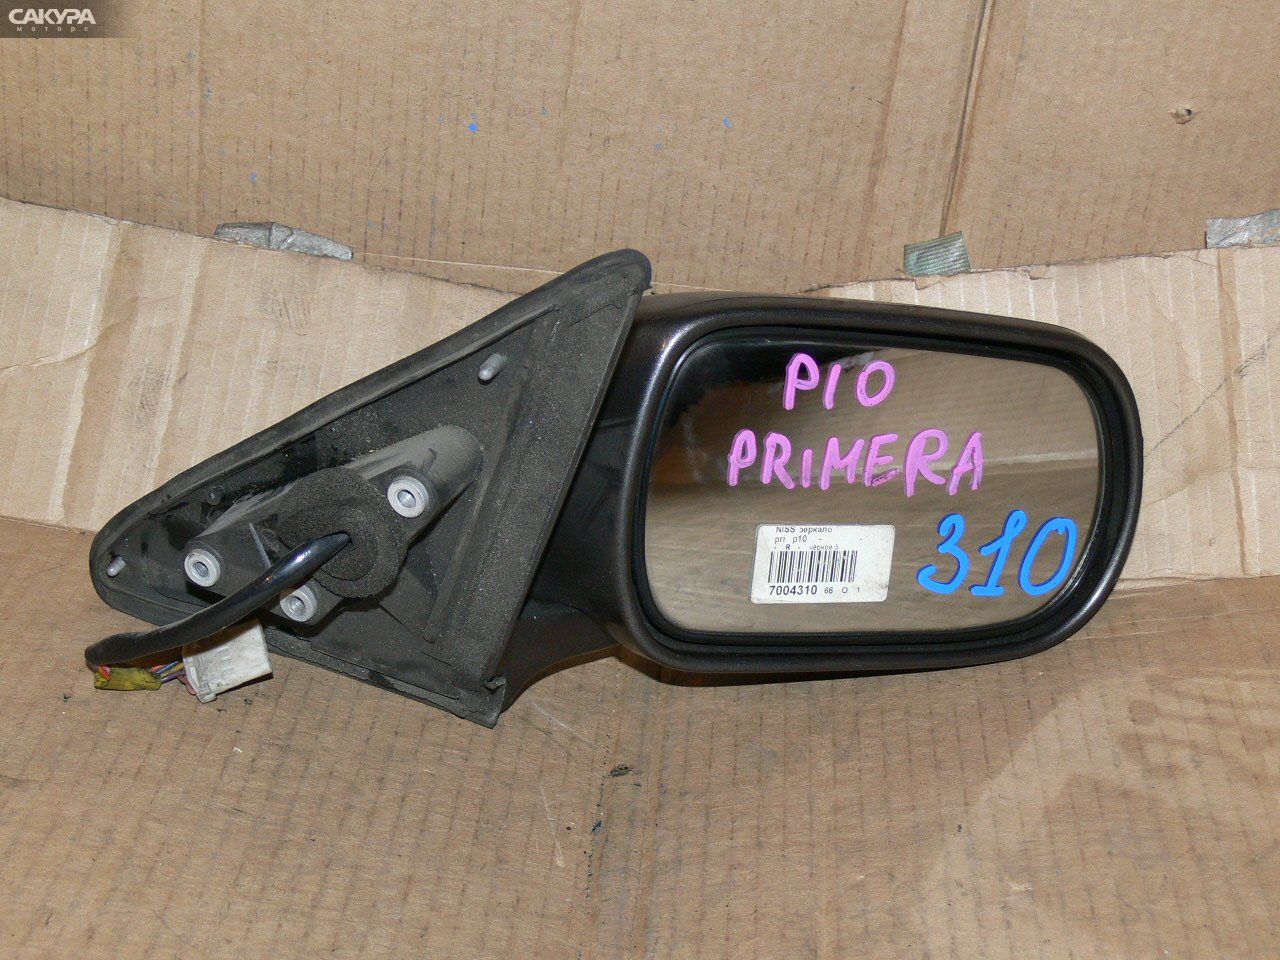 Зеркало боковое правое Nissan Primera P10: купить в Сакура Иркутск.